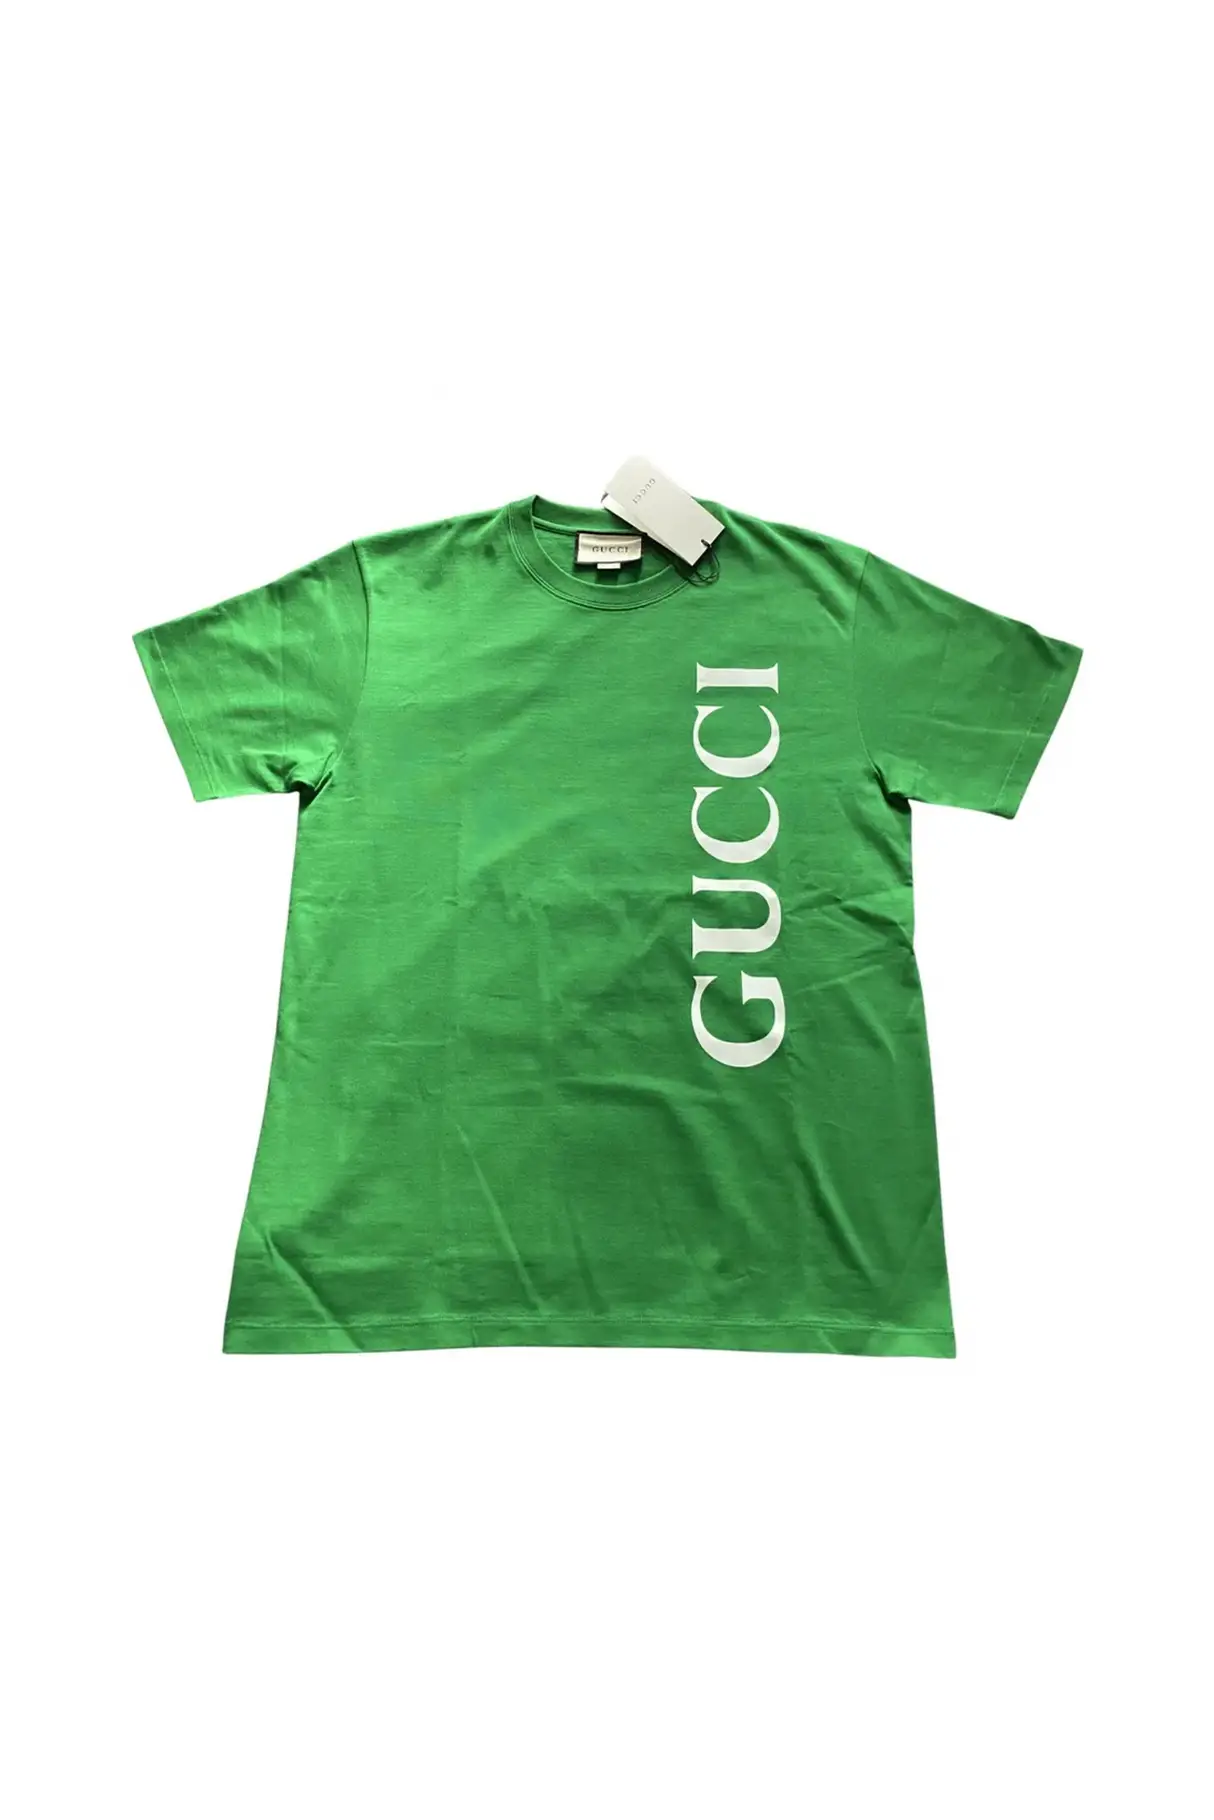 t-shirt-gucci-green.jpg